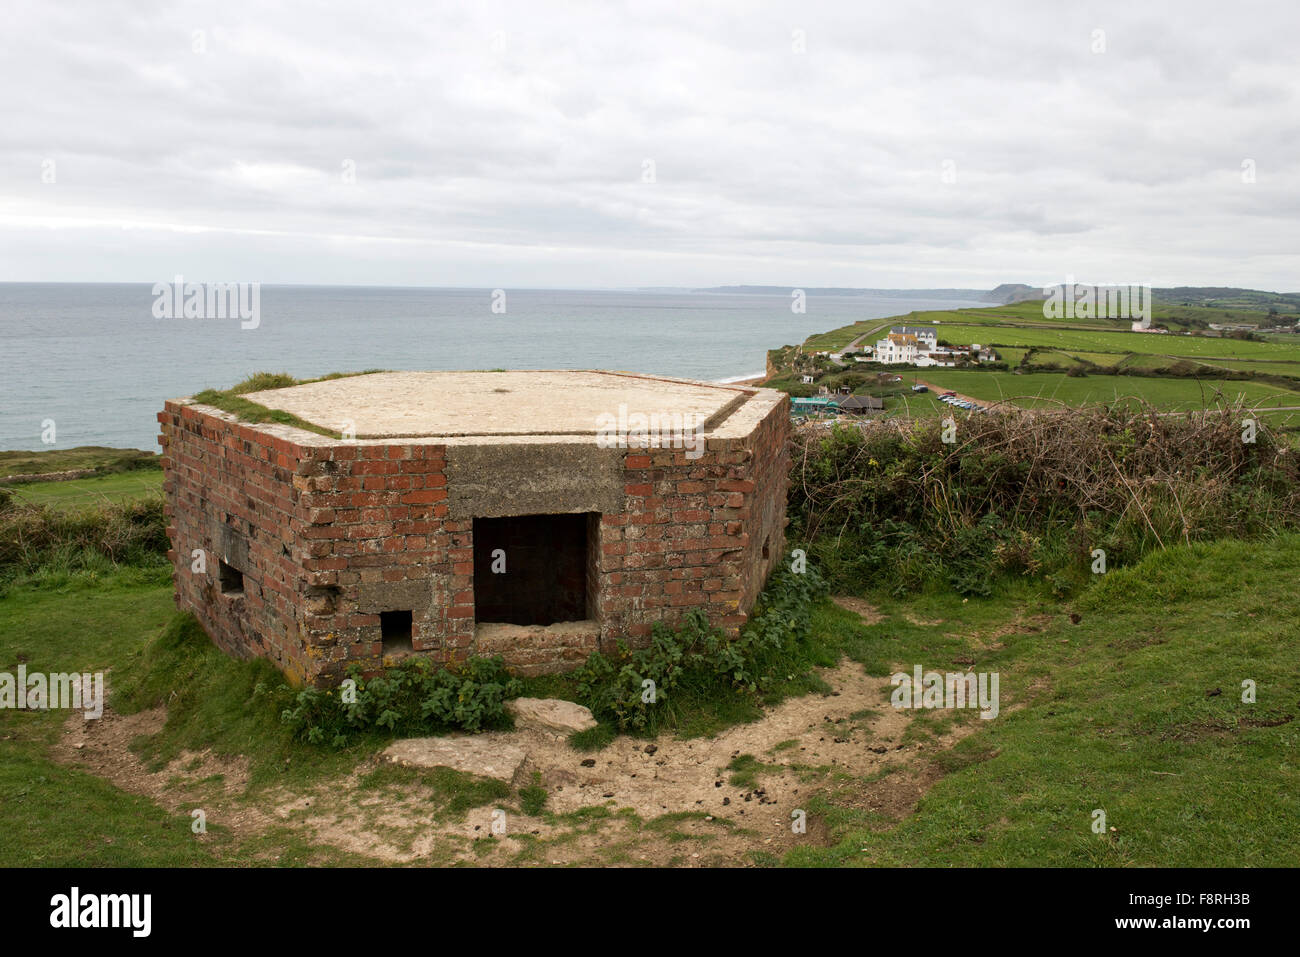 La Seconde Guerre mondiale, 2 comprimé 'fort' partie de la défense de la mer donnant sur la baie de Lyme, près de West Bay et plage de Chesil, Dorset Banque D'Images